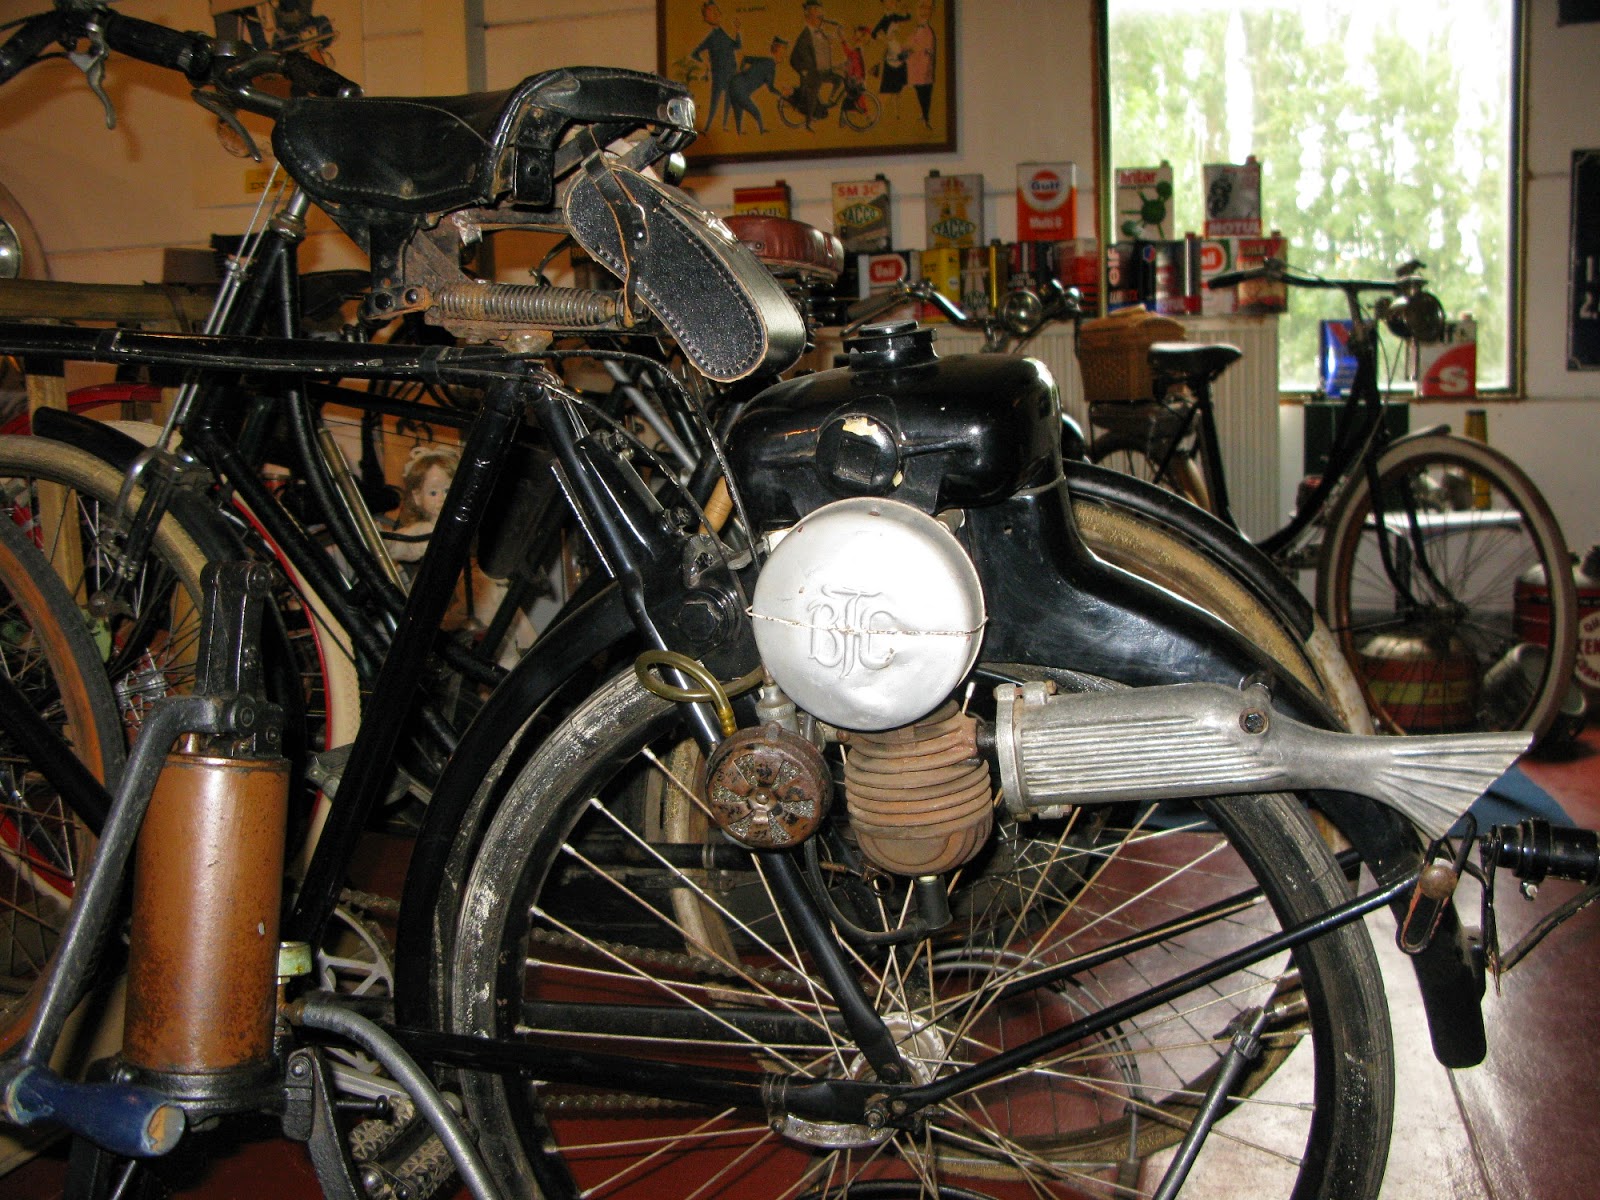 Danish BTC cyclemotor from 1951